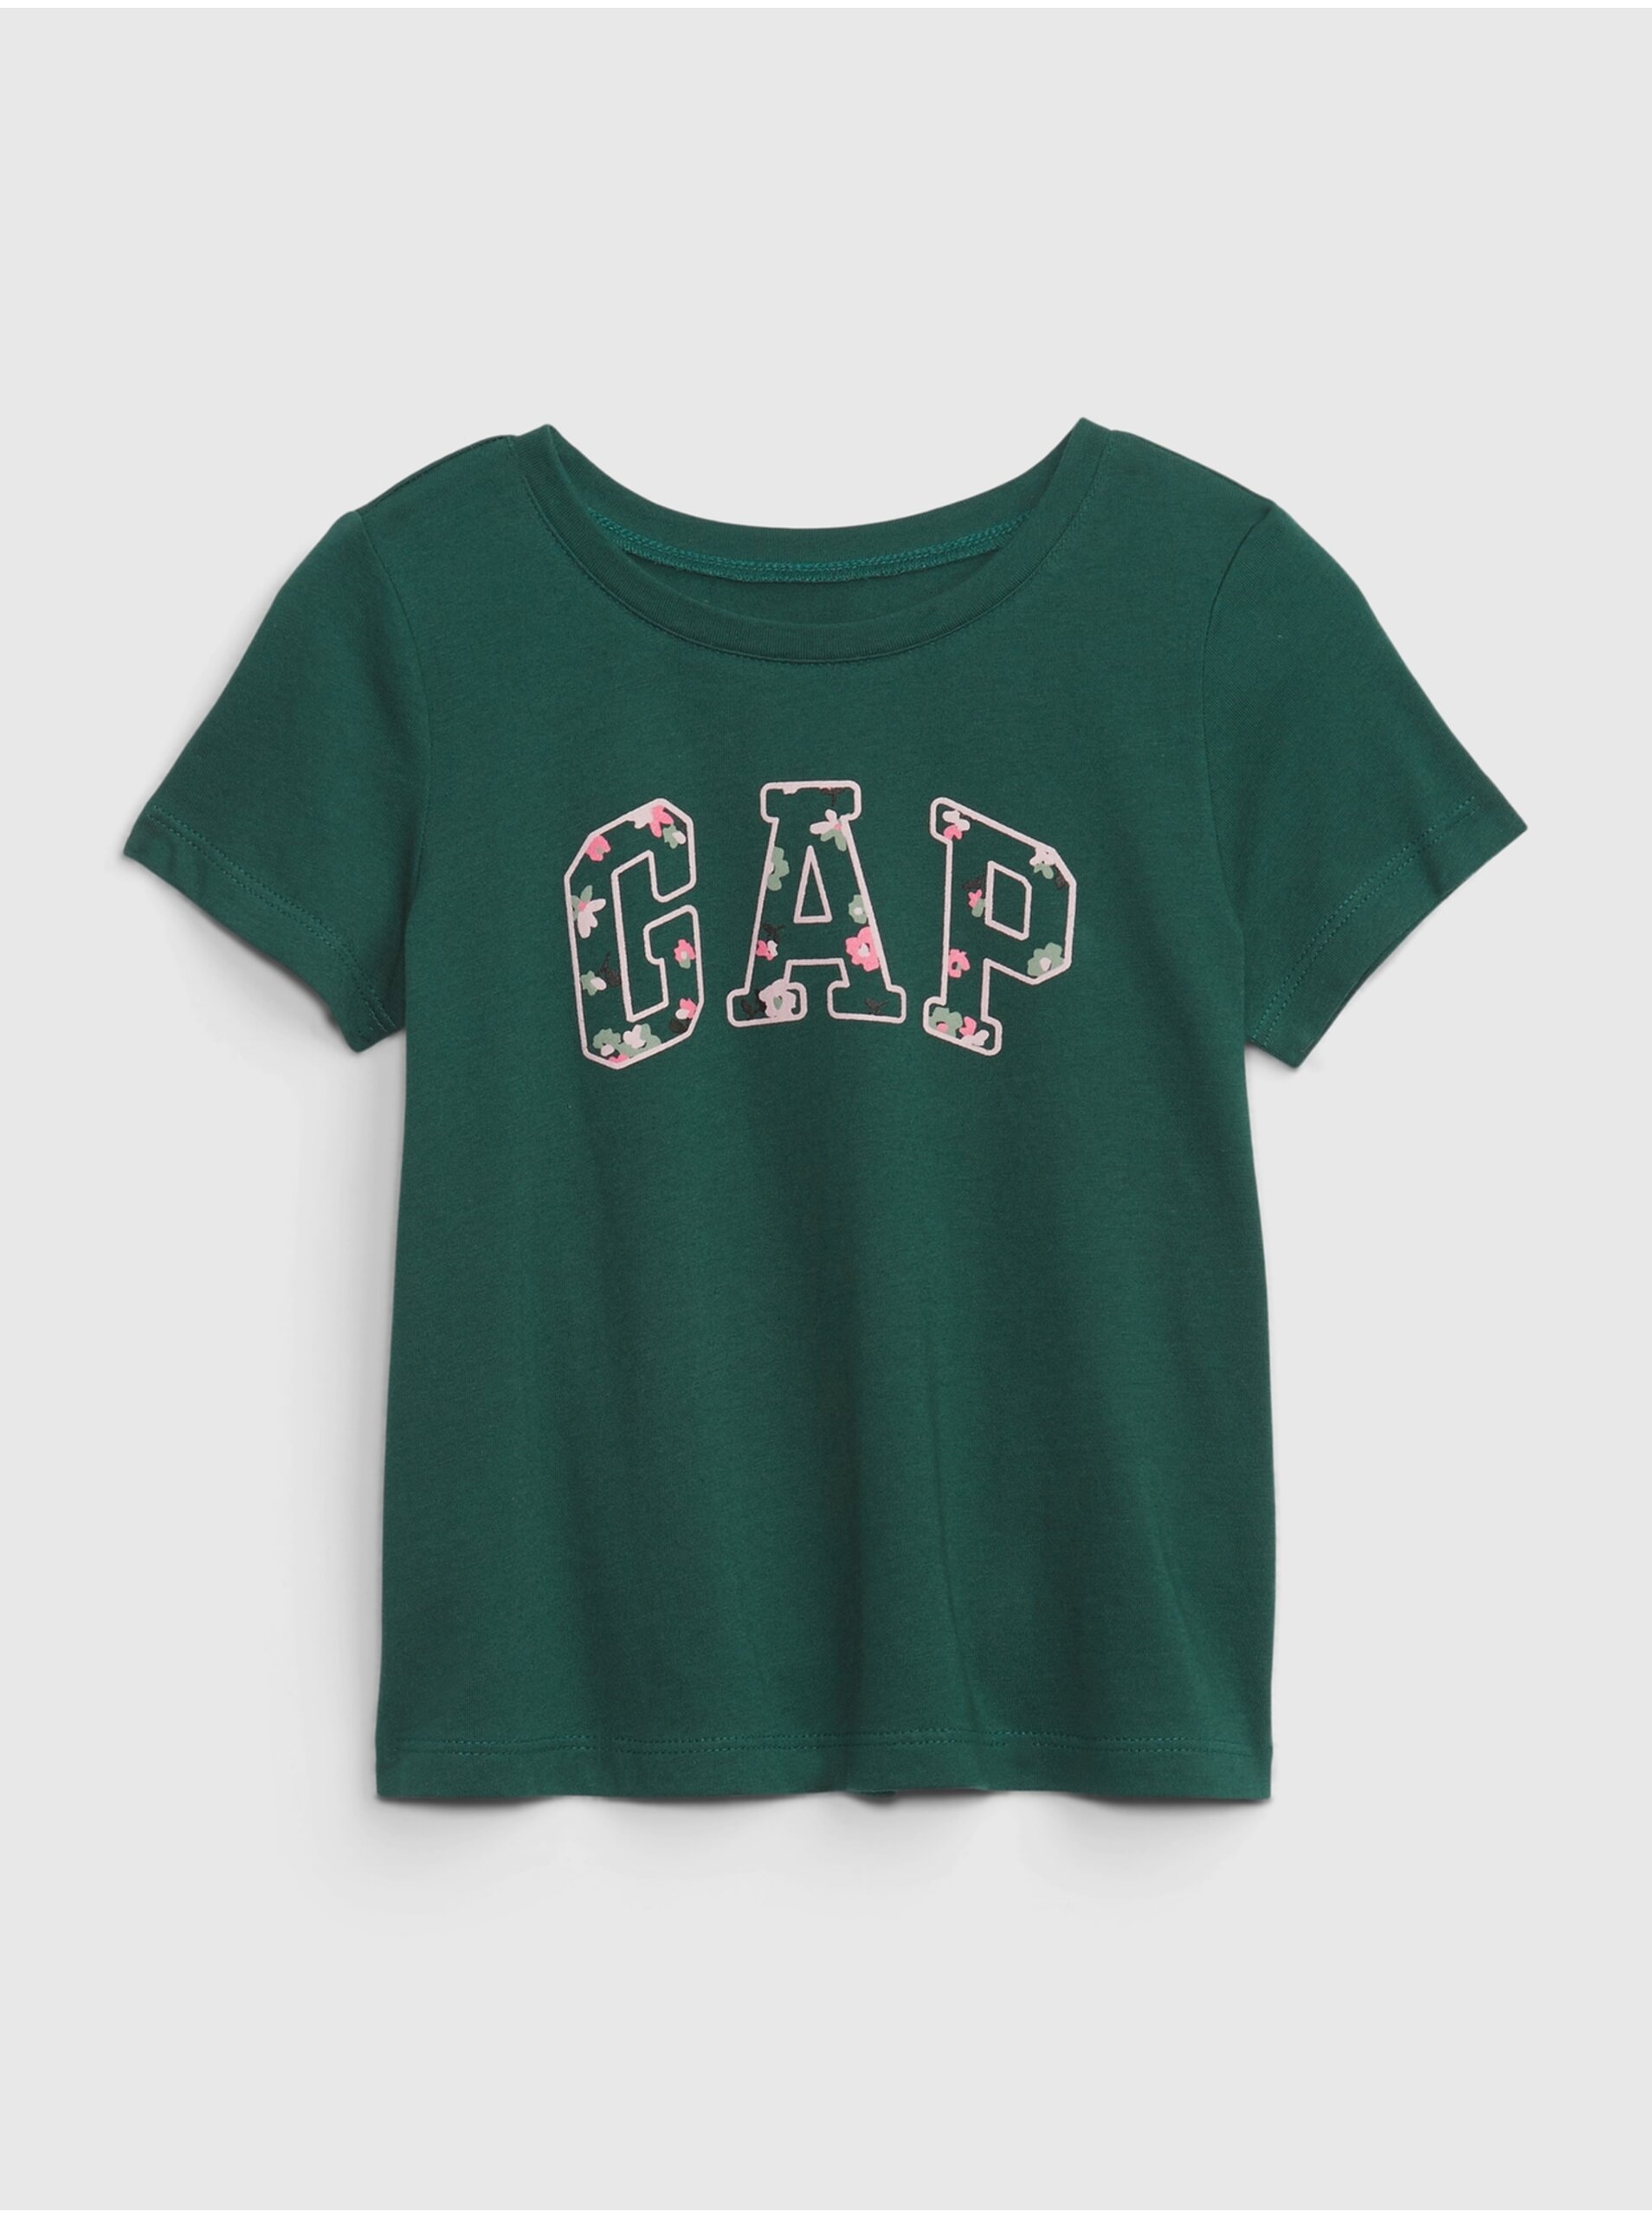 Lacno Tmavozelené dievčenské tričko Gap